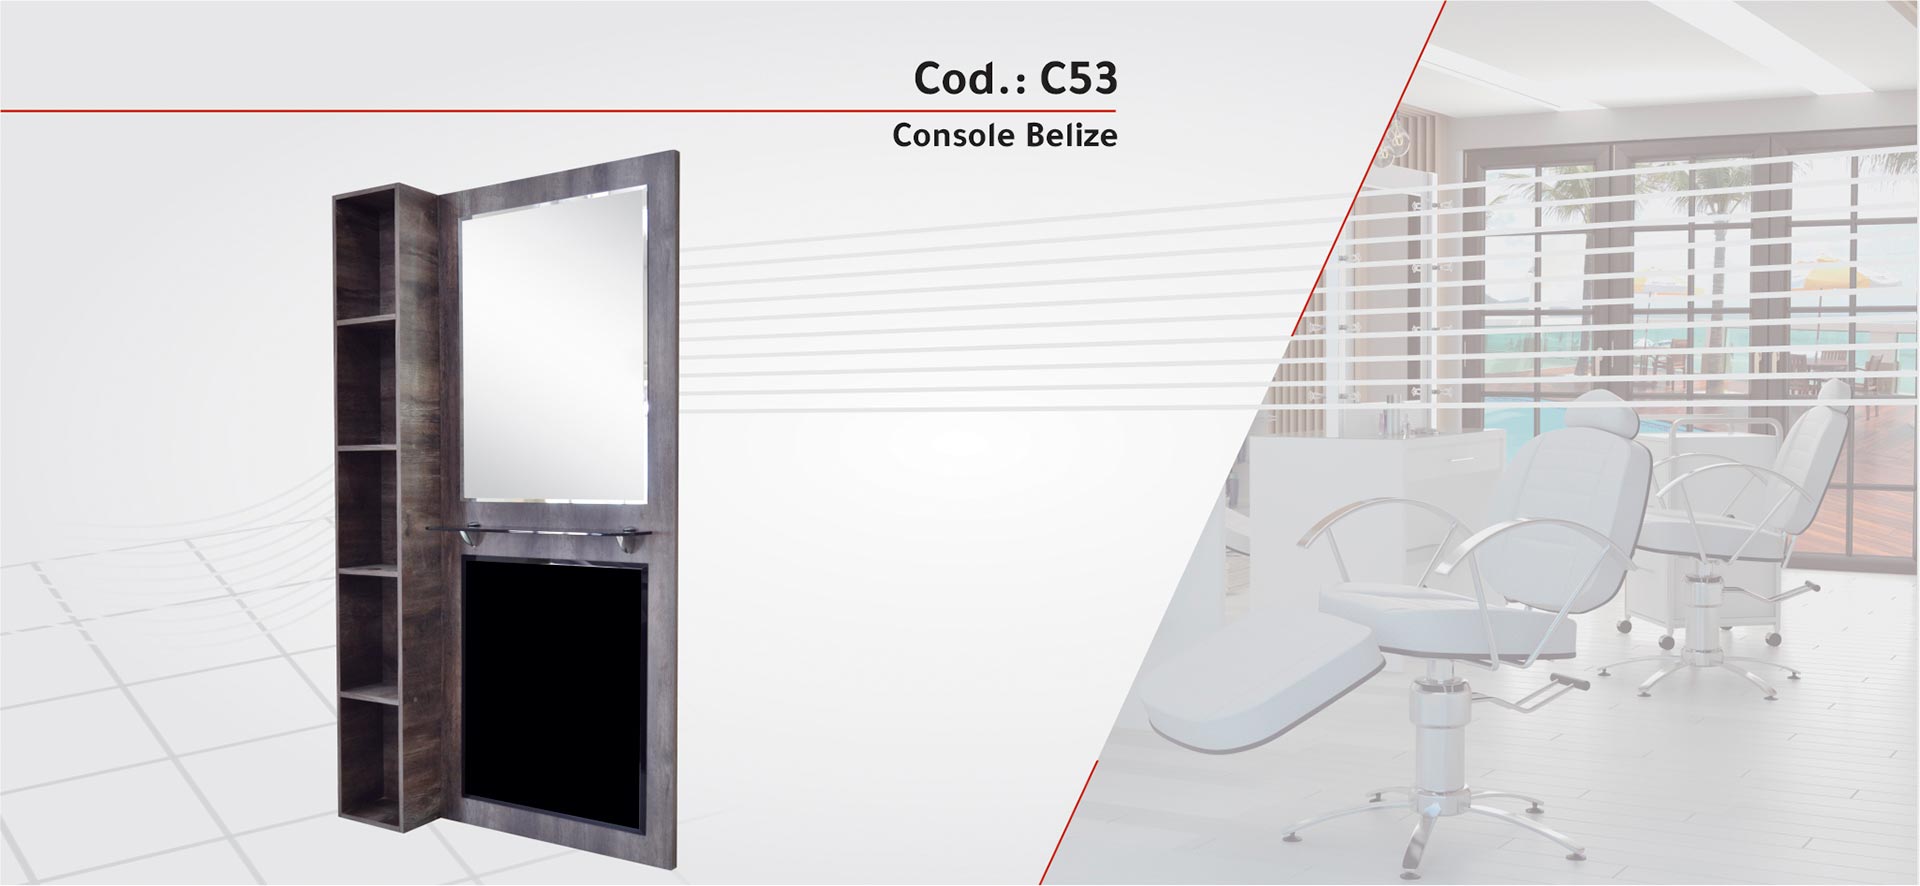 C53 - Console Belize